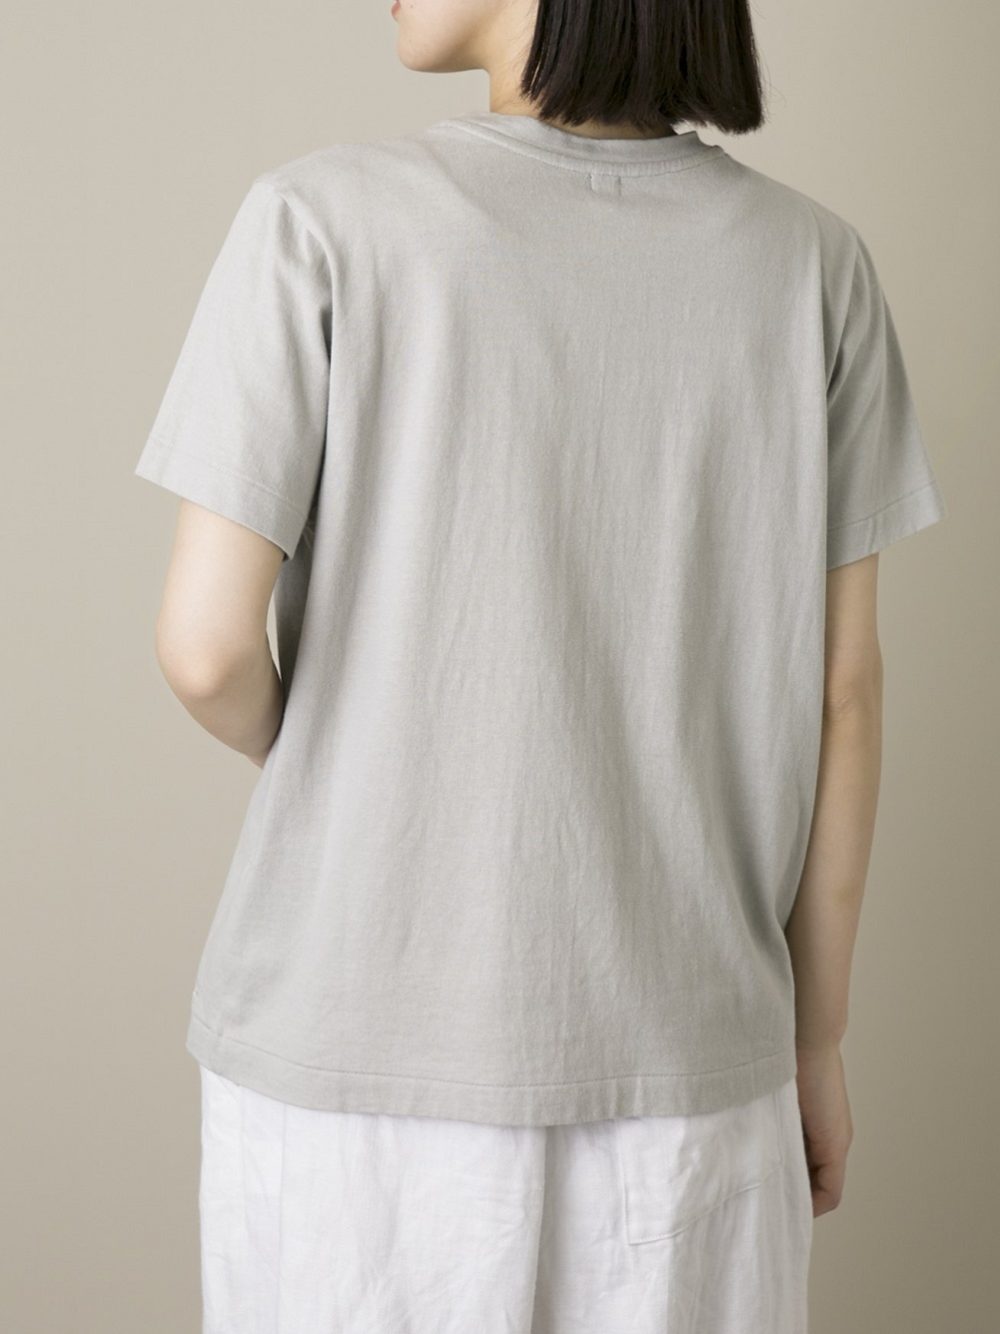 & 12 Linen（天竺）半袖Tシャツ | ITEM | Vlas blomme｜ ヴラスブラム 